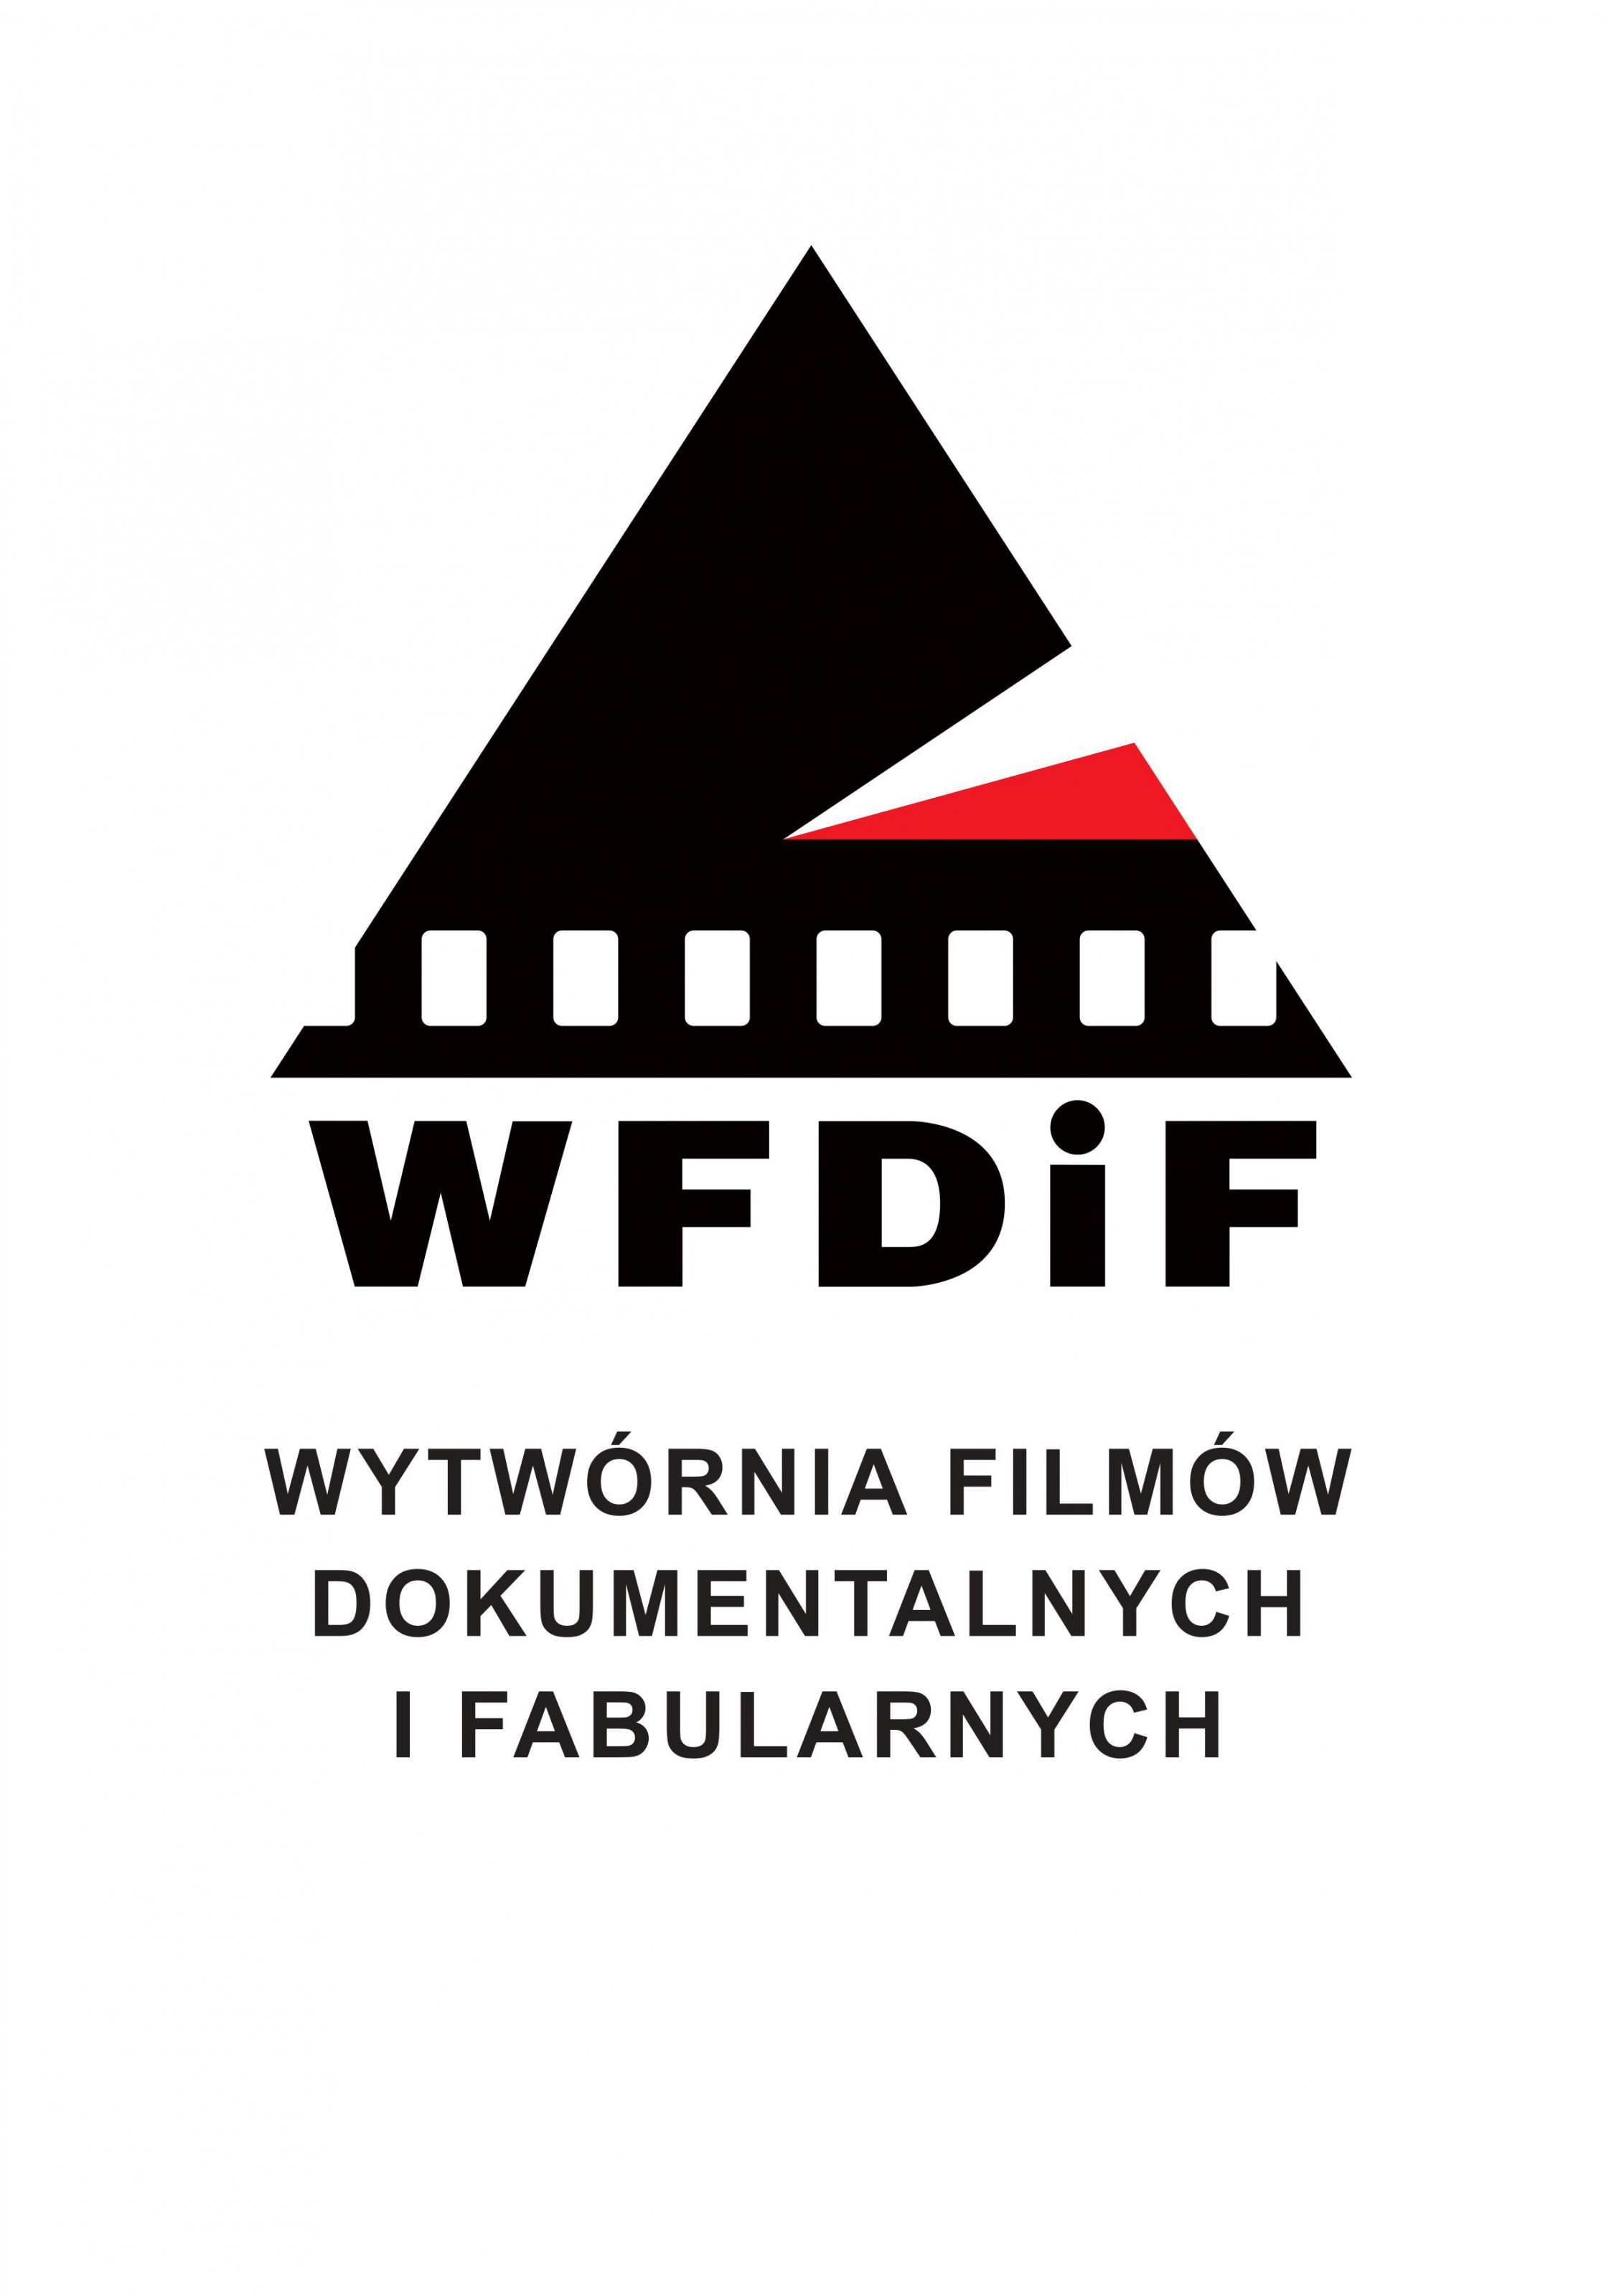 logo_wfdif.jpg